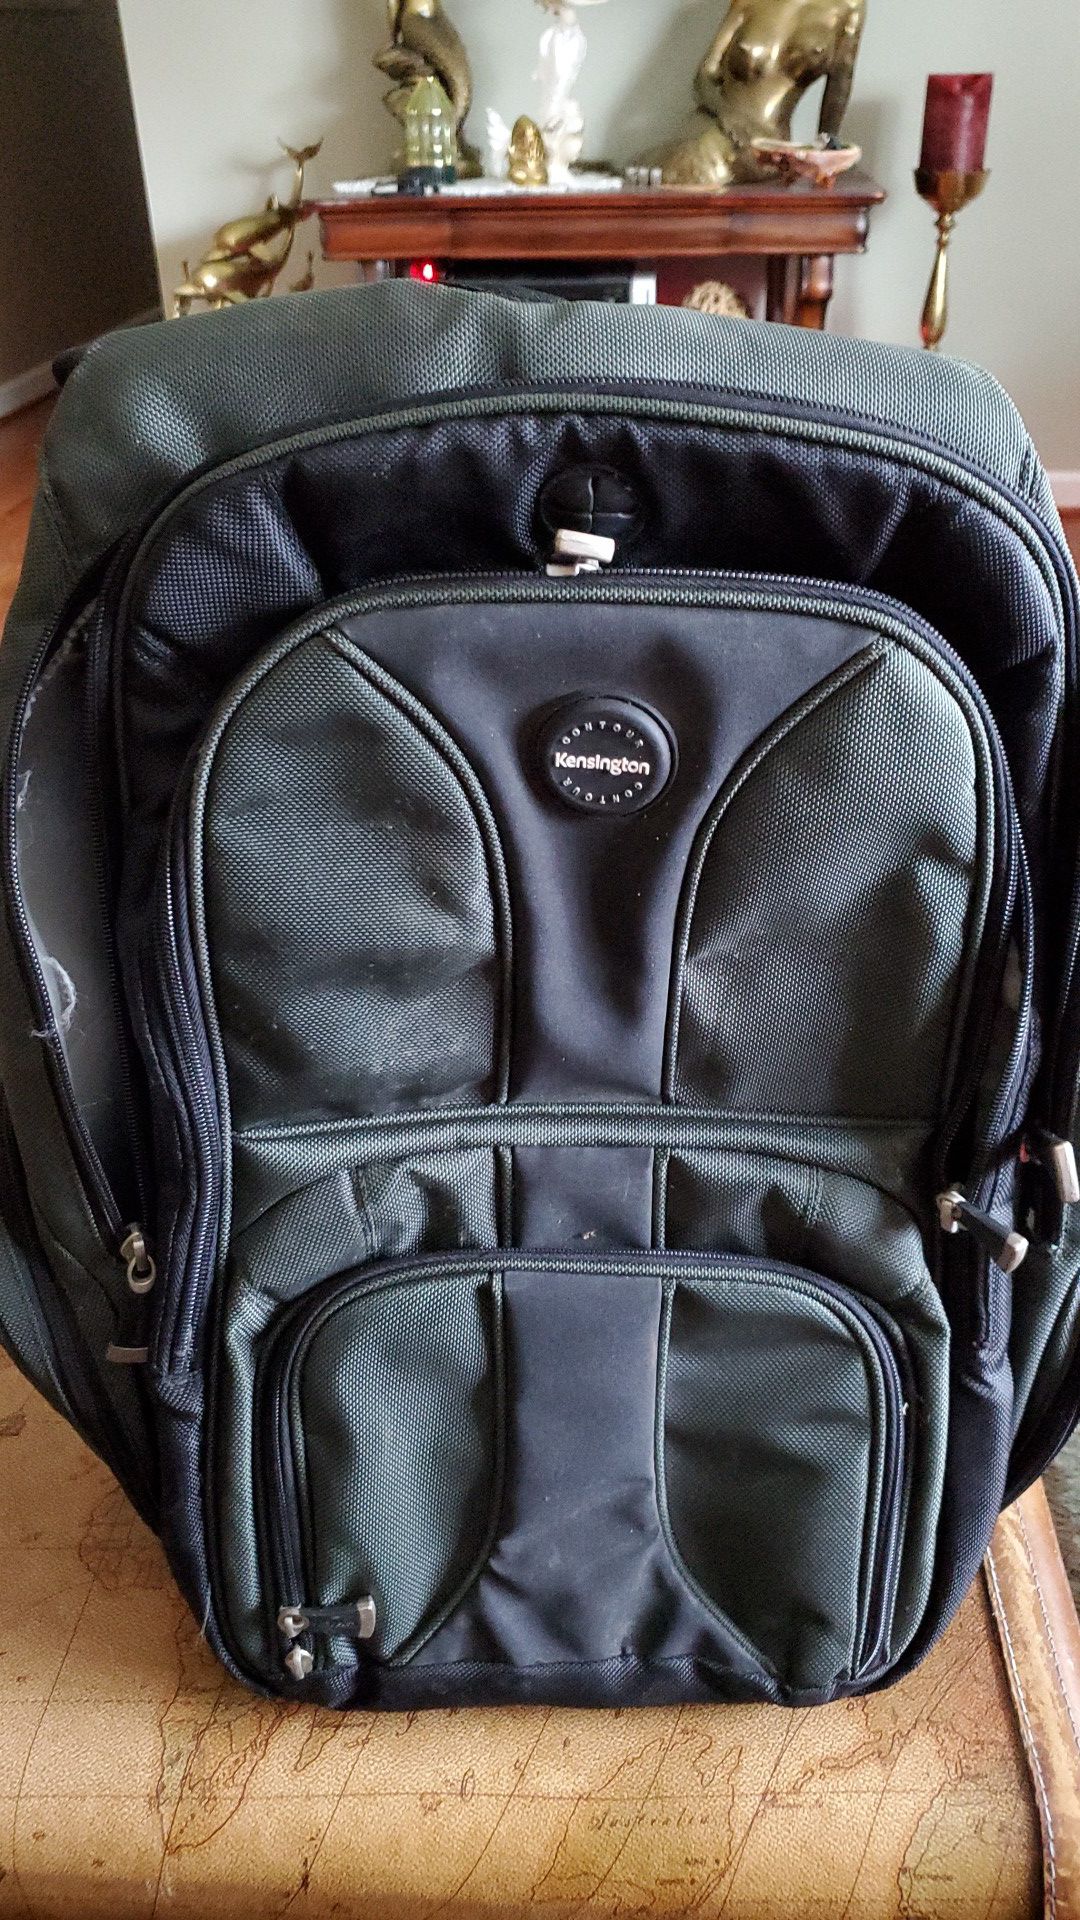 Kensington contour backpack